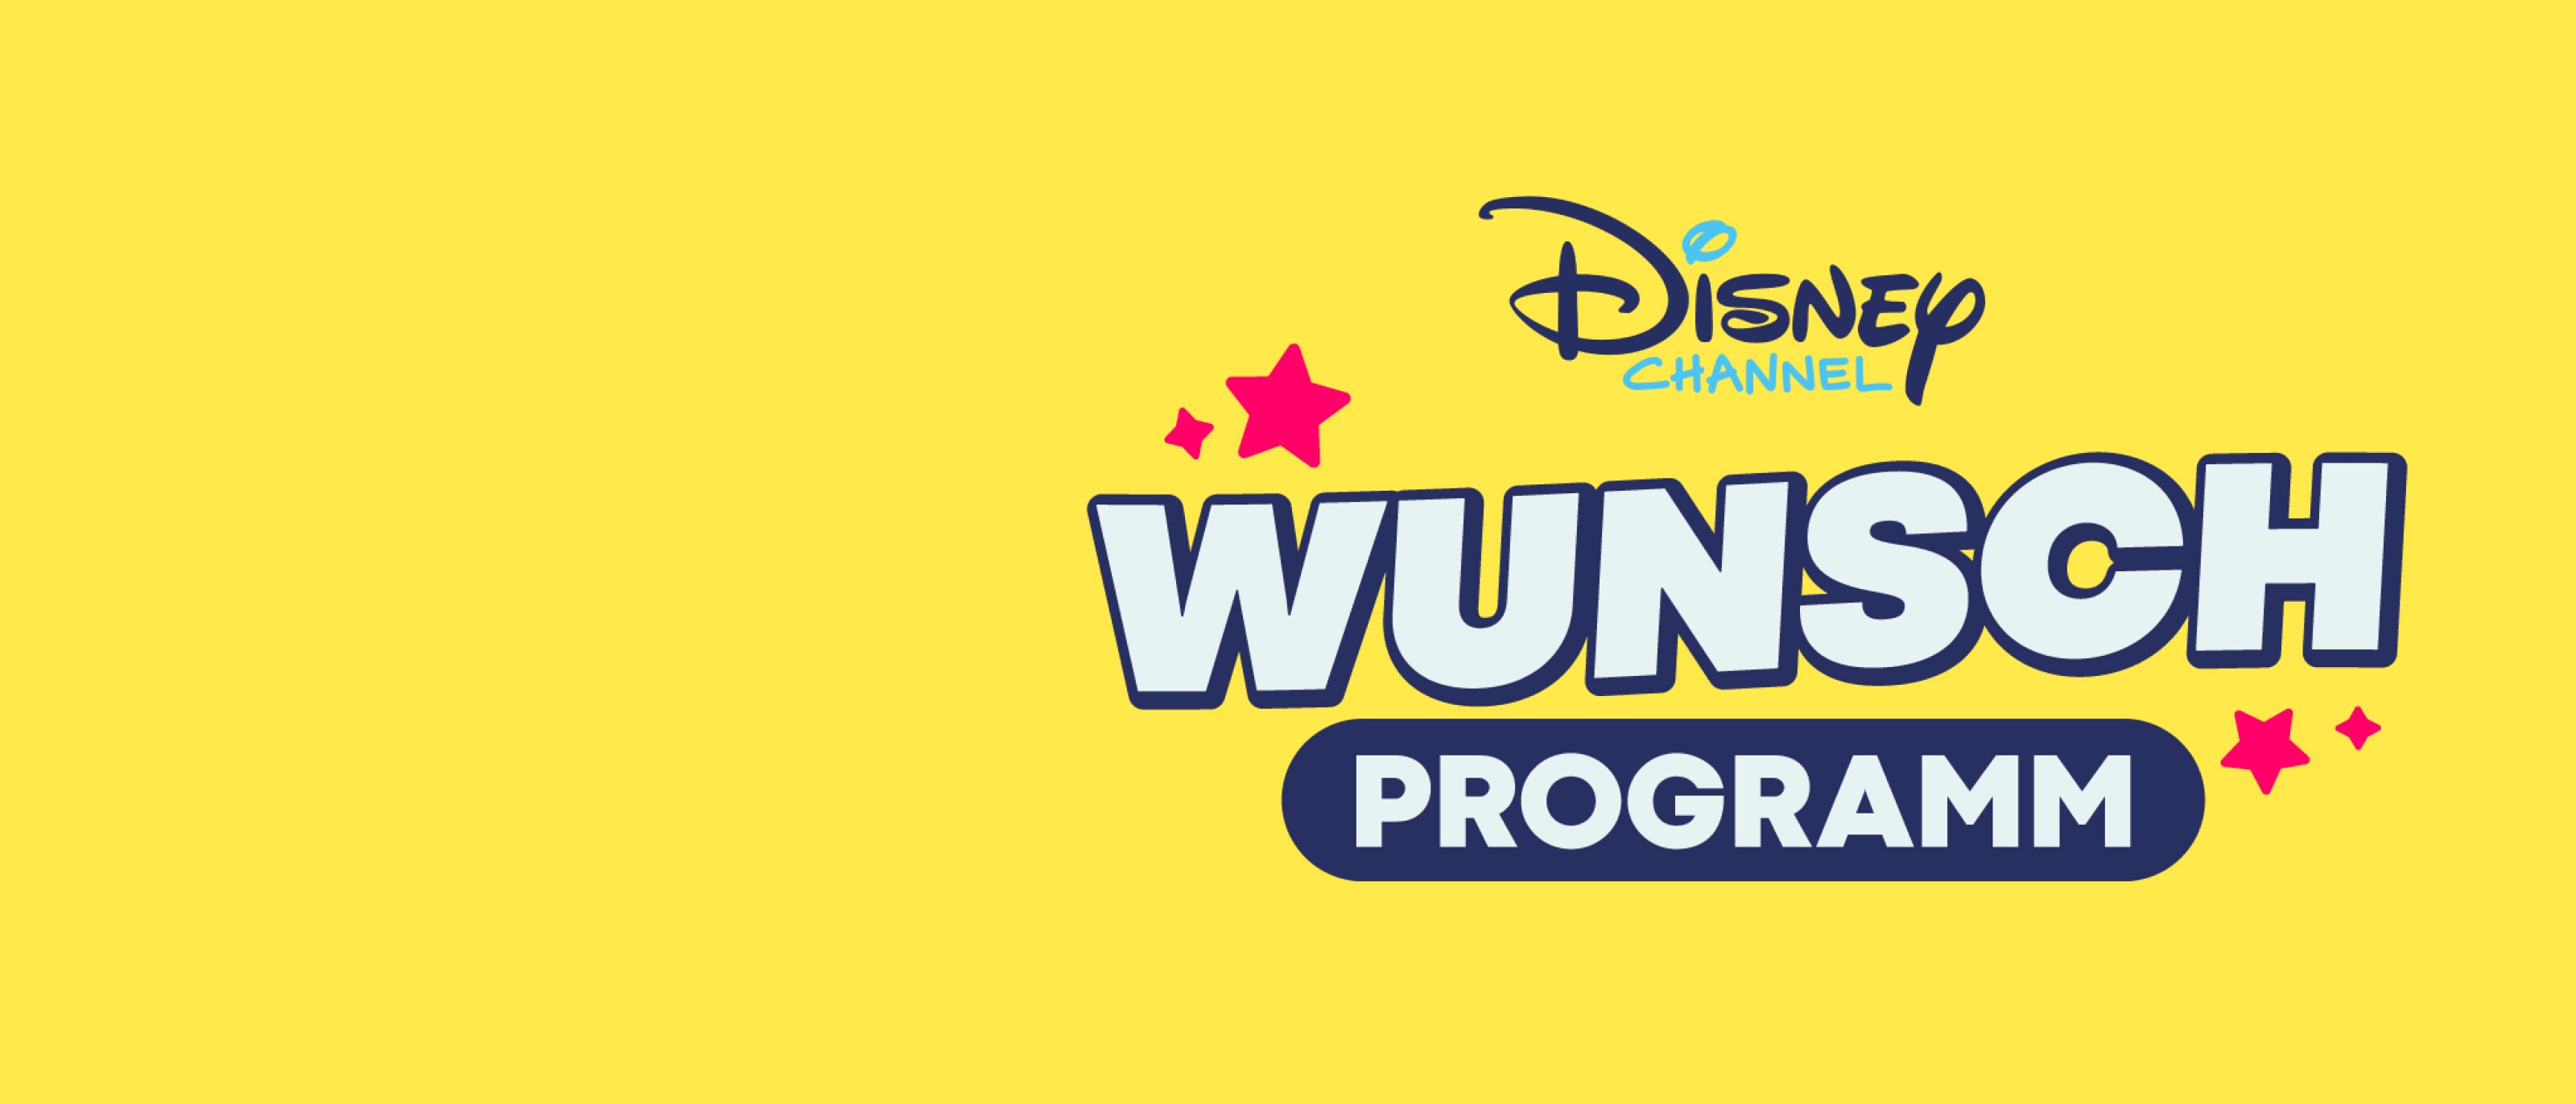 Disney Channel Wunsch Programm